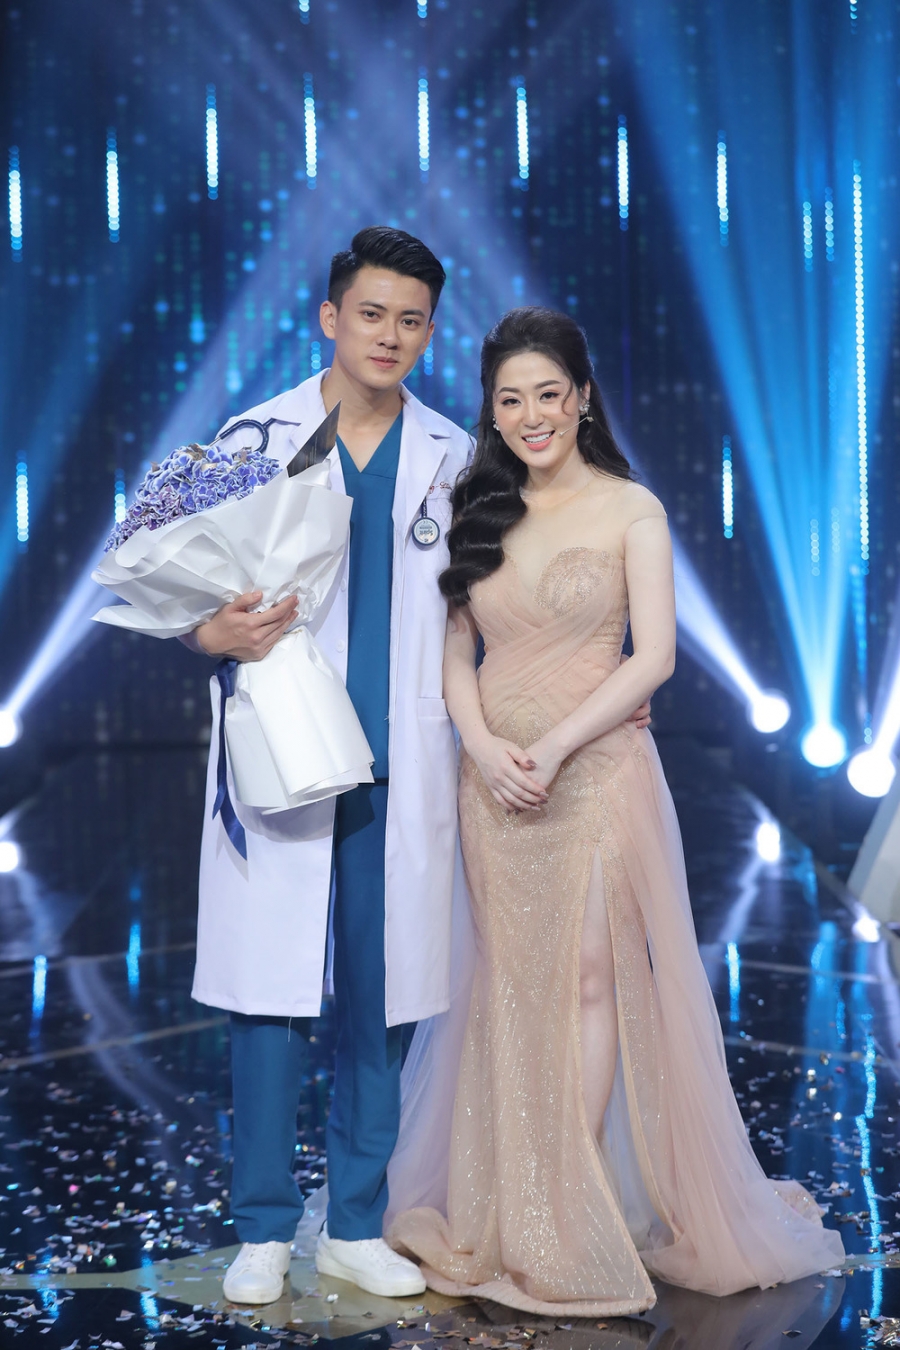 Năm 2020, Quang Lâm đăng kí tham gia show hẹn hò 'Người Ấy Là Ai' mùa 3 (tập 8) và thành công chinh phục nữ chính Thanh Tâm.